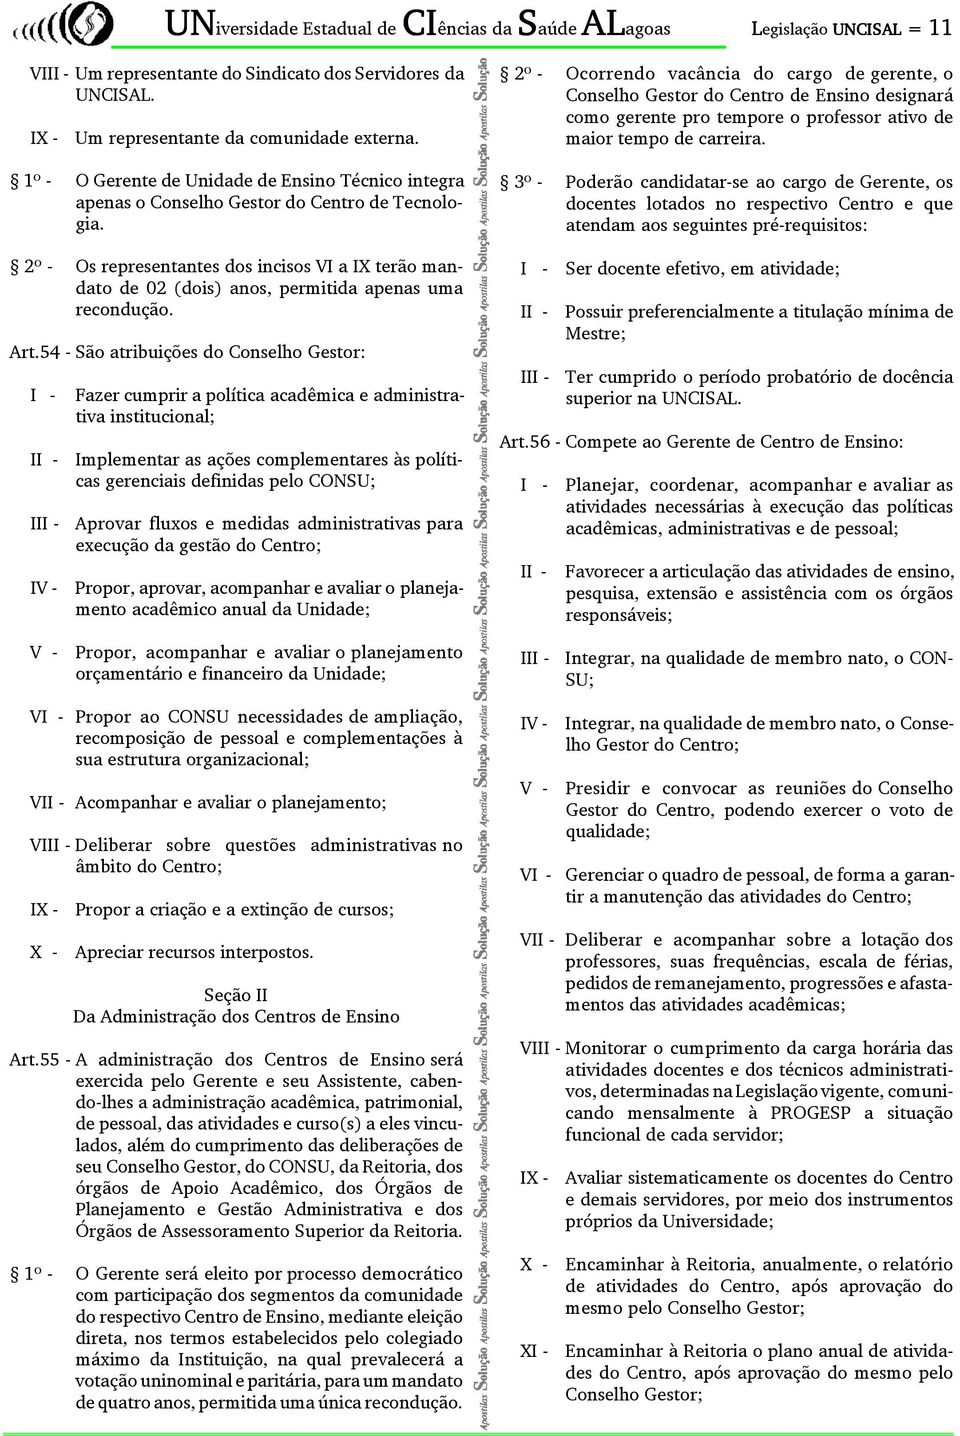 2º - Os representantes dos incisos VI a IX terão mandato de 02 (dois) anos, permitida apenas uma recondução. Art.